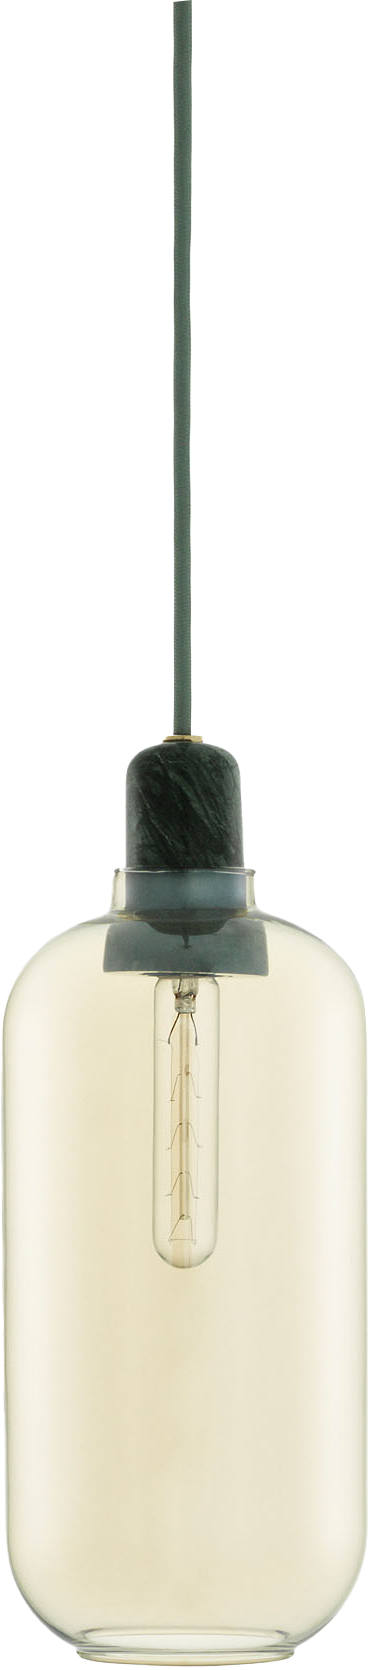 Amp Lampe groß EU - KAQTU Design